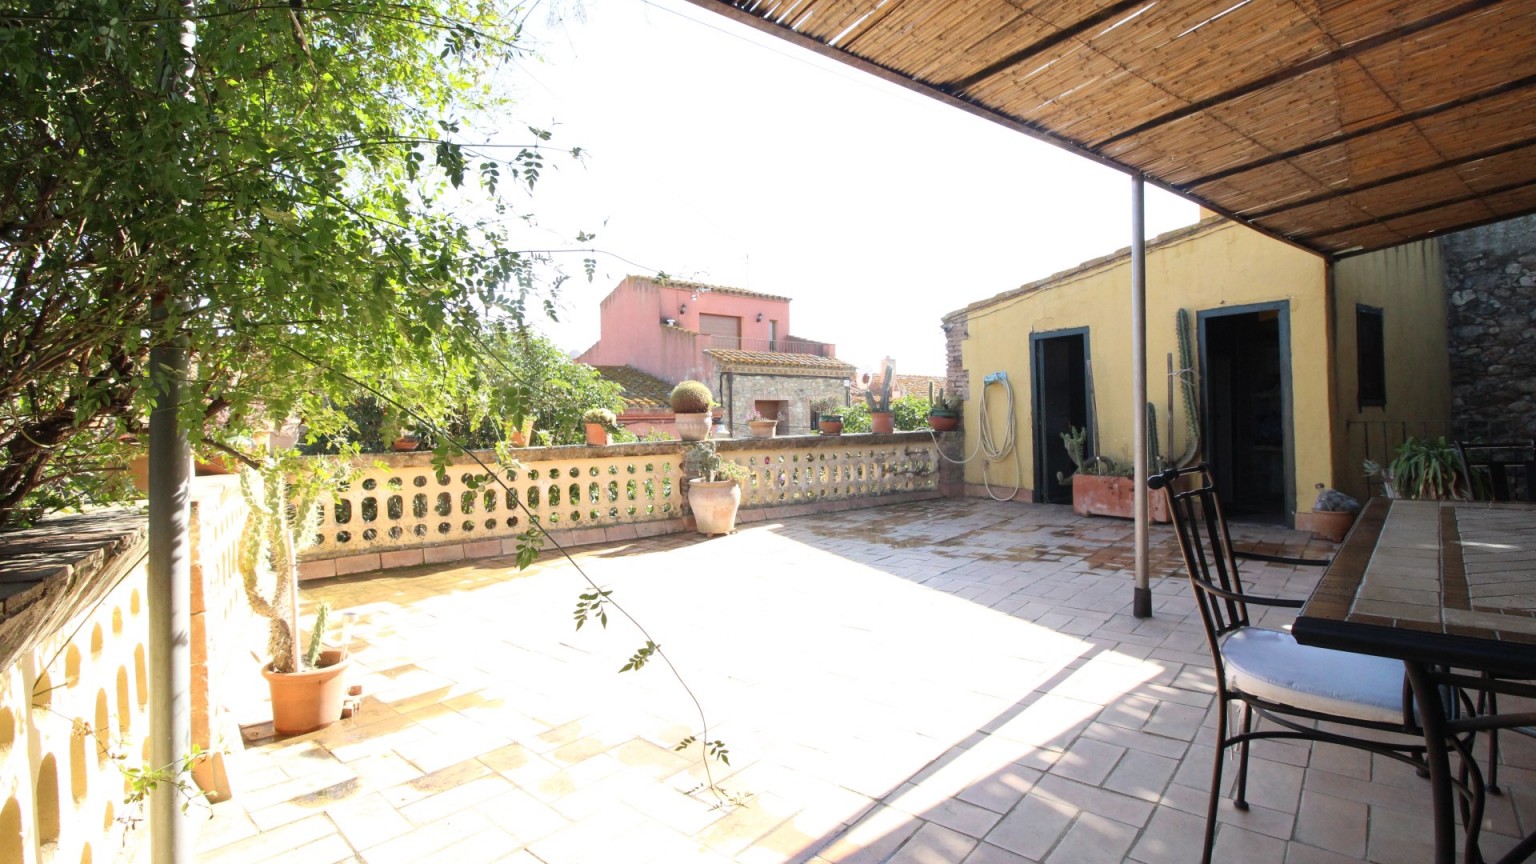 Magnifique maison rustique à vendre, avec grande terrasse et jardin à Mollet de Perelada.